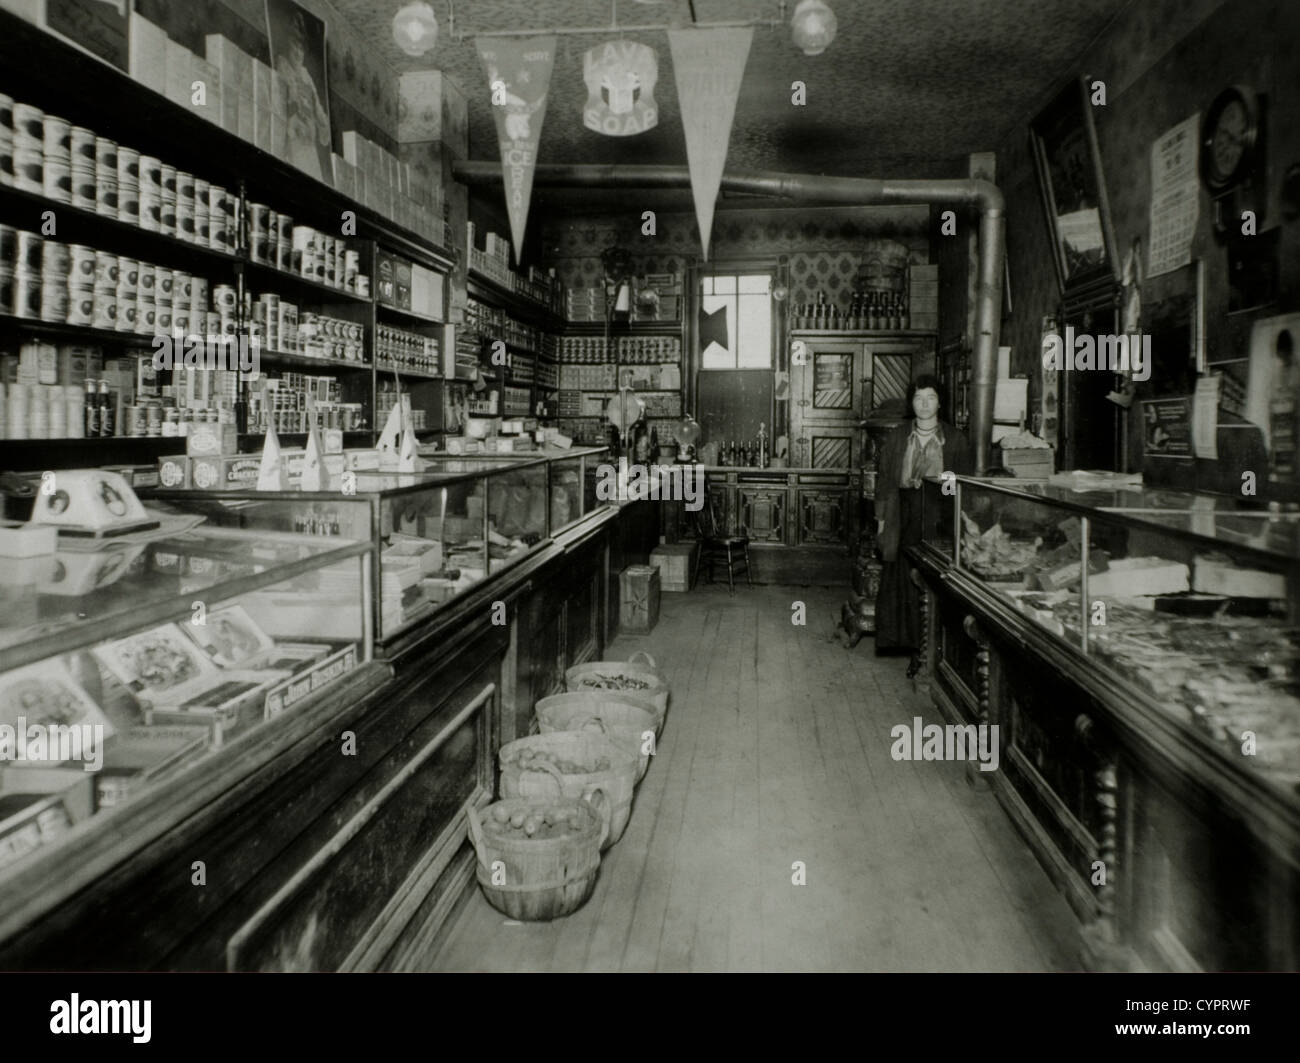 Drogheria e negozio di alimentari, USA, circa 1910 Foto Stock